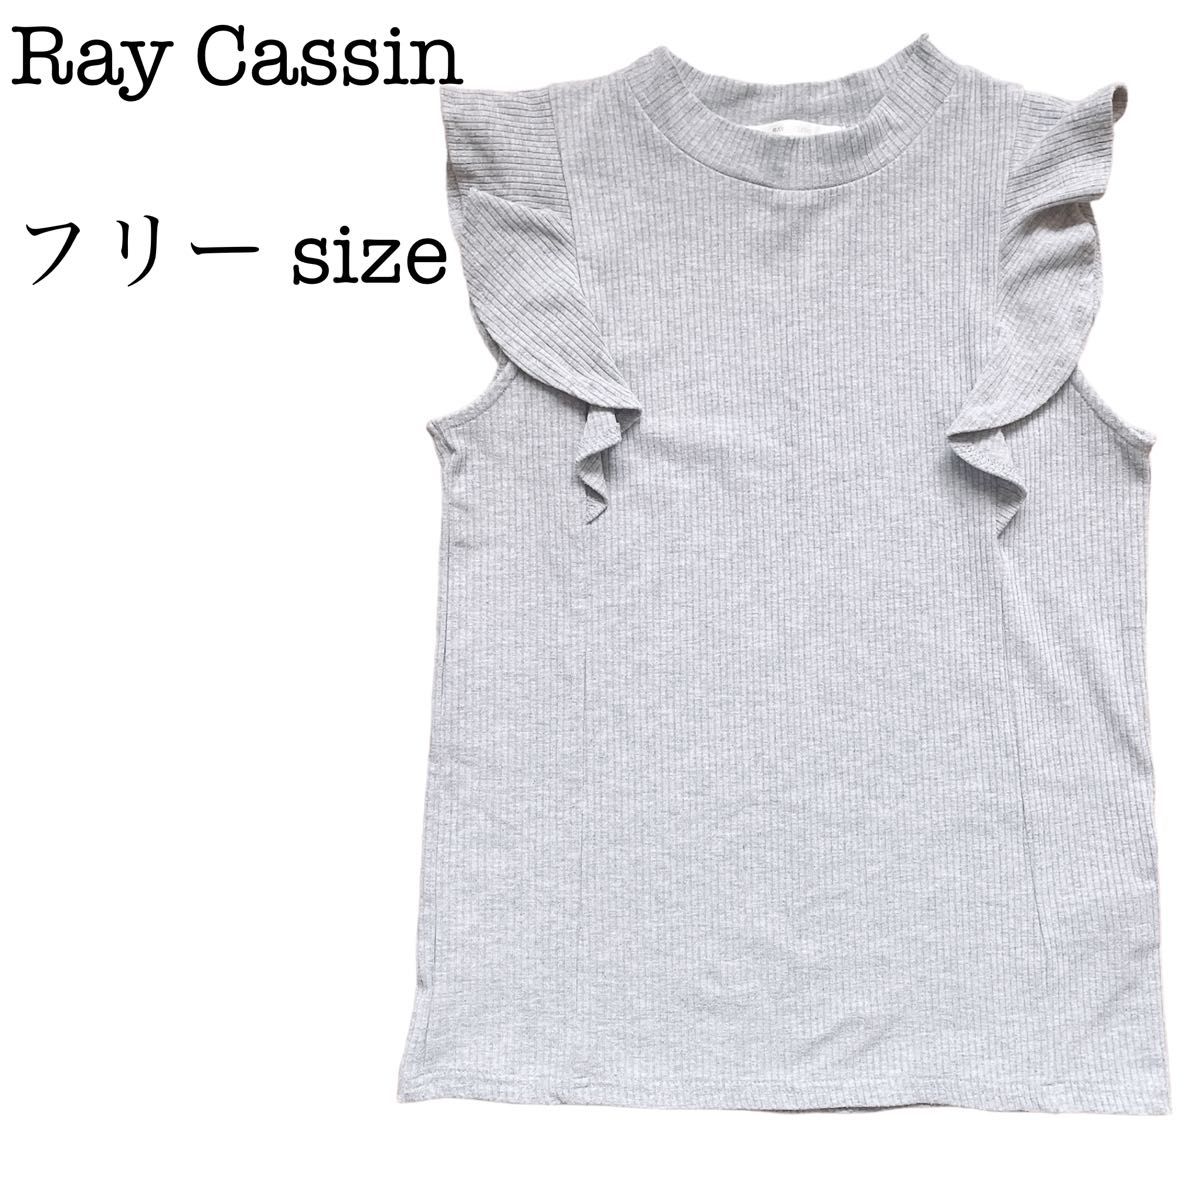 【汚れなし】Ray Cassin レイカズン ノースリーブ サマーニット フリル 二の腕カバー グレー フリーサイズ 匿名配送